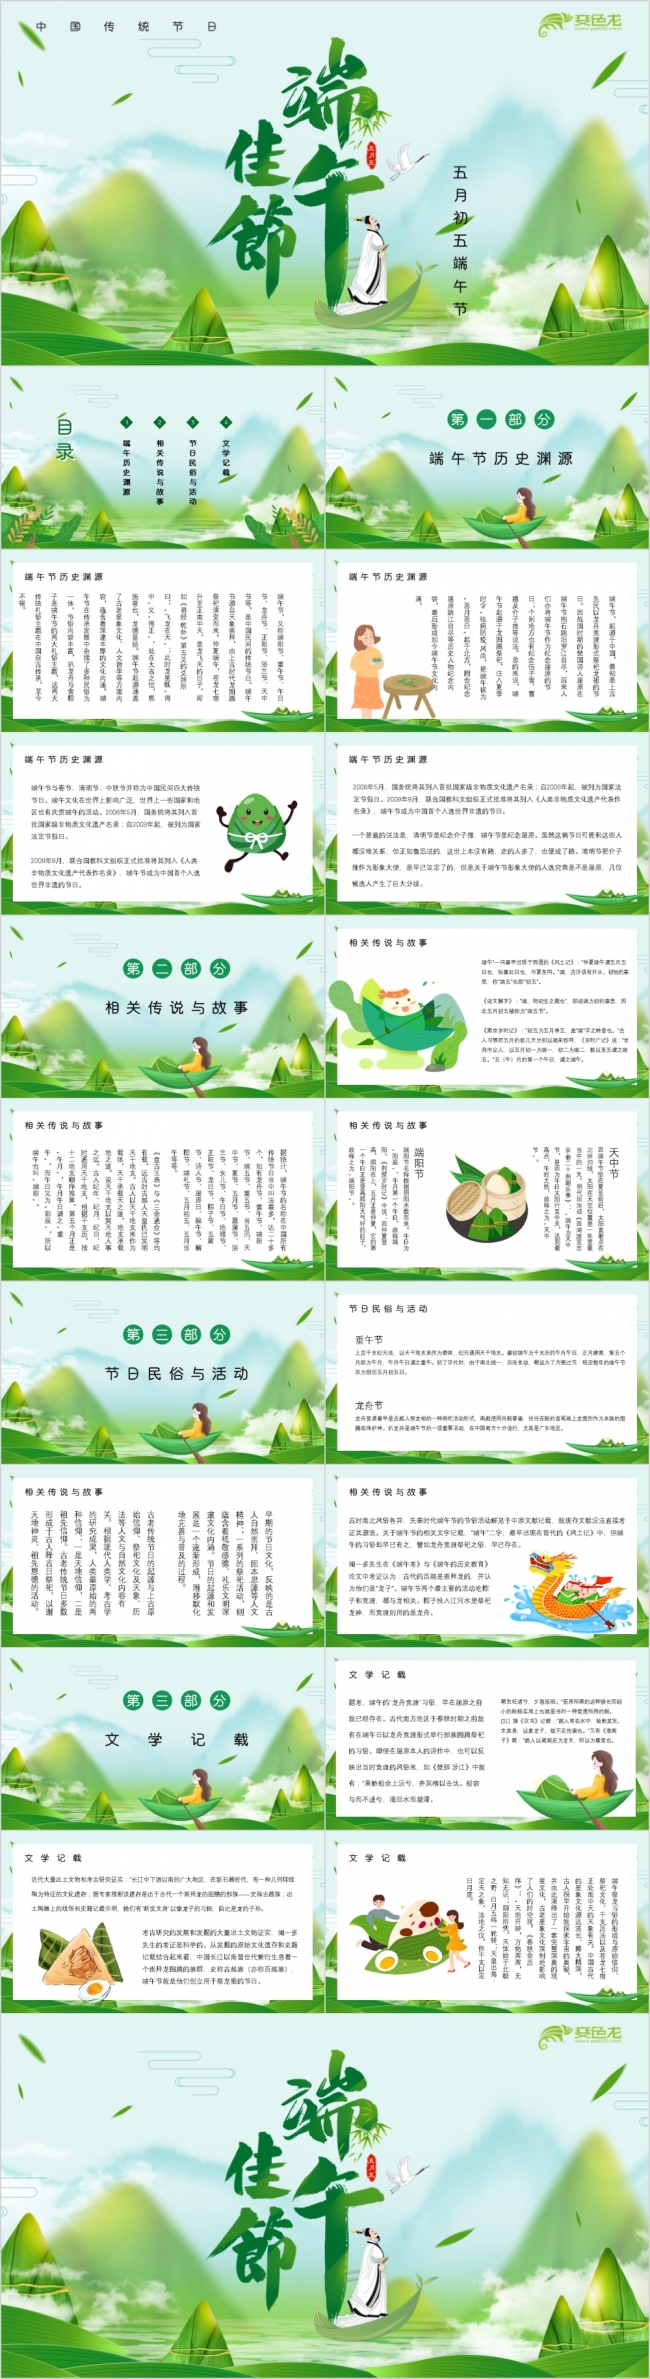 绿色中国古风端午佳节节日介绍宣传PPT模板